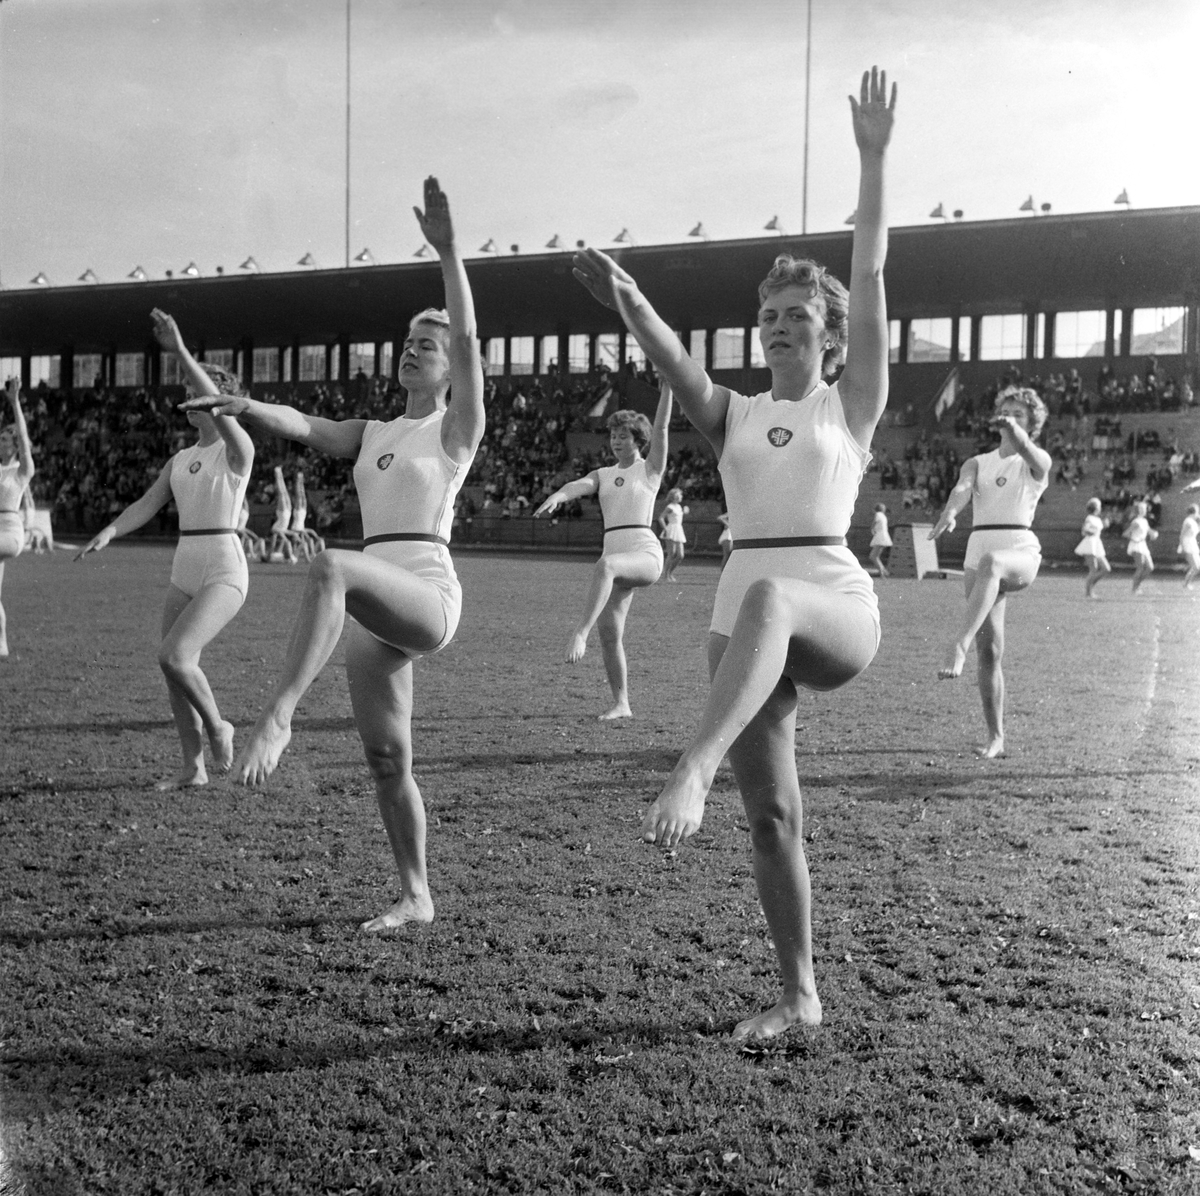 Serie. Kretsturnstevne på Bislett stadion. Fotografert 8. juni 1959.